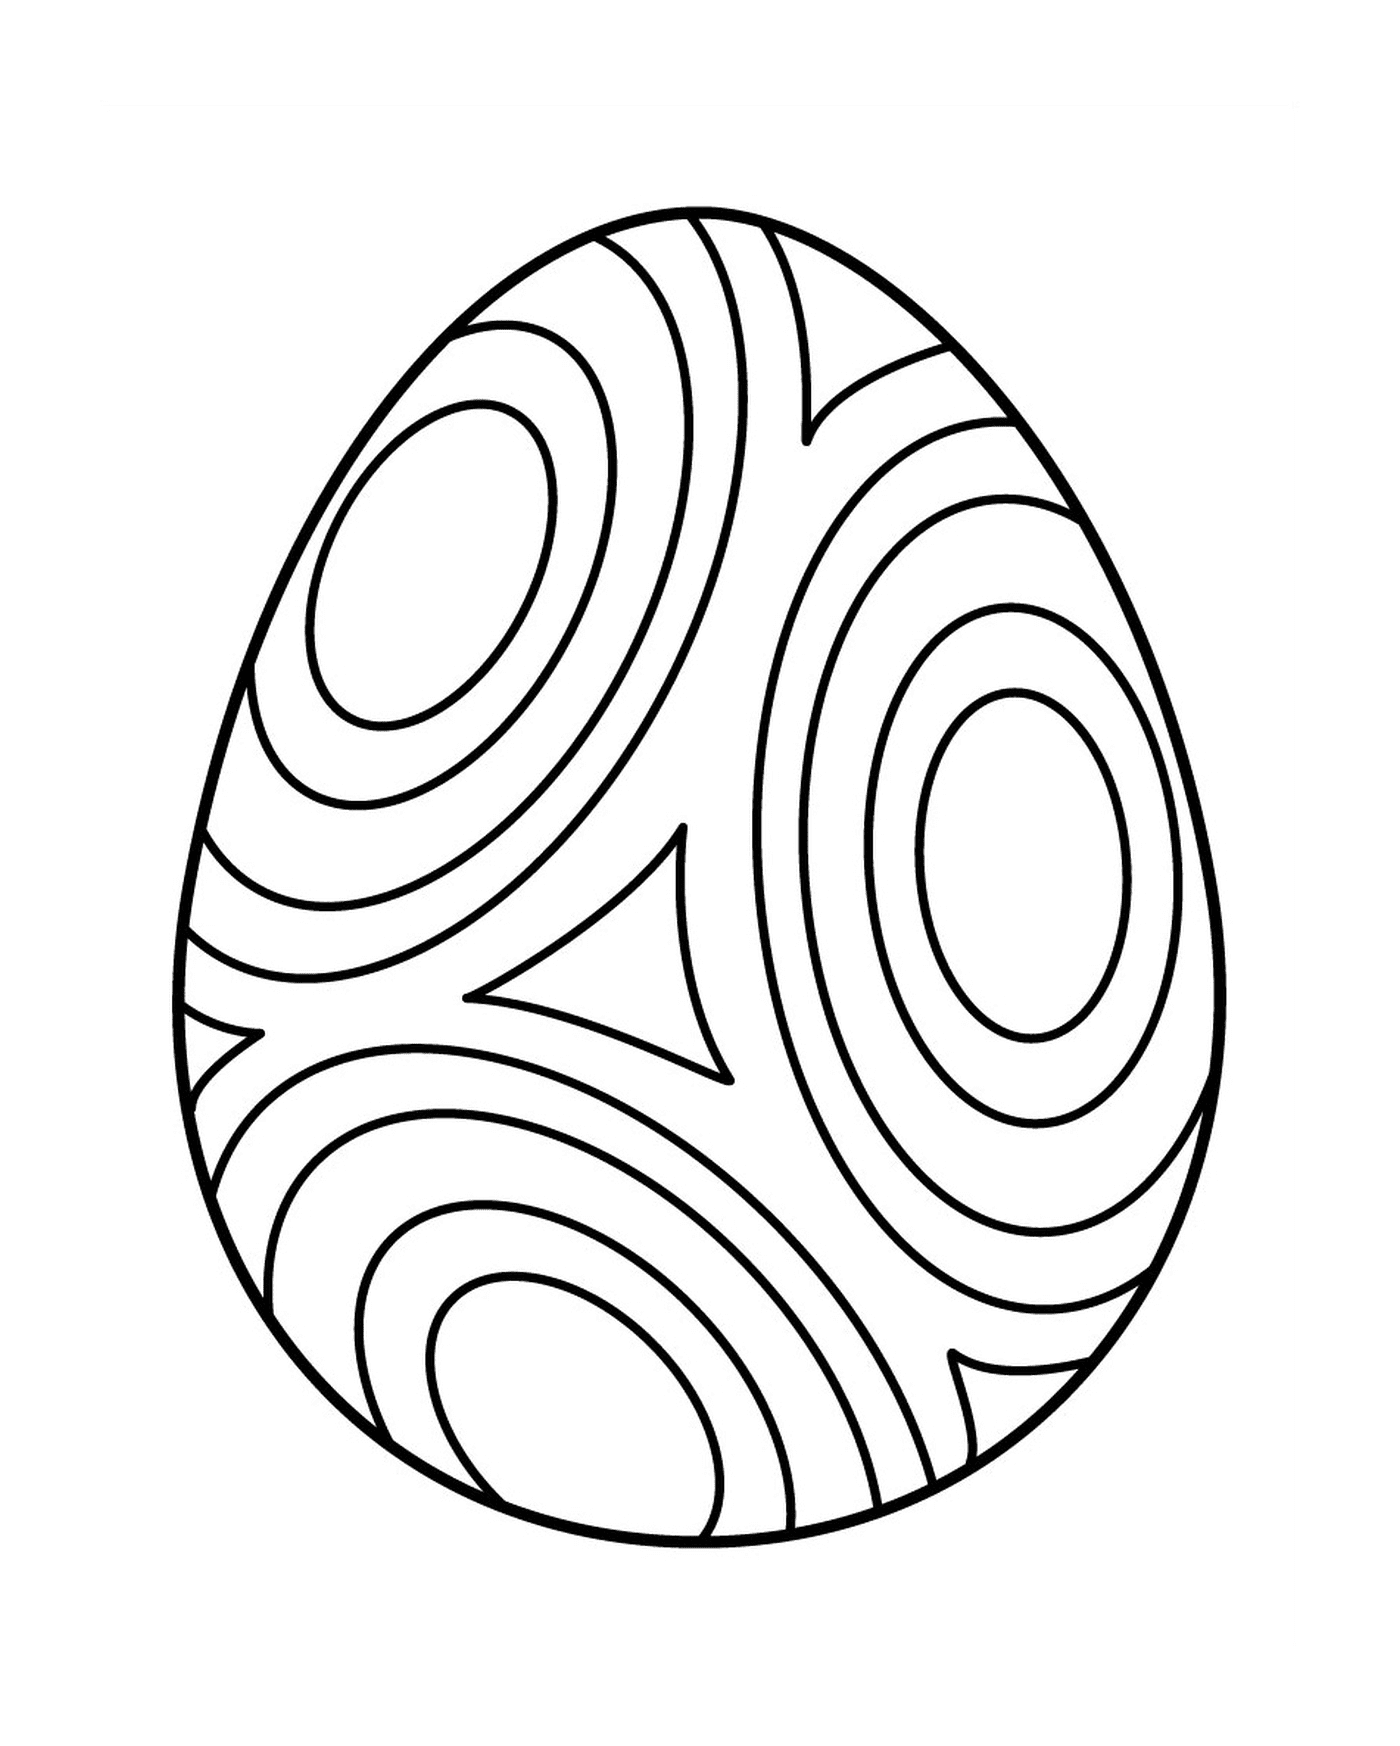  ovo de Páscoa com círculo, um ovo colorido 